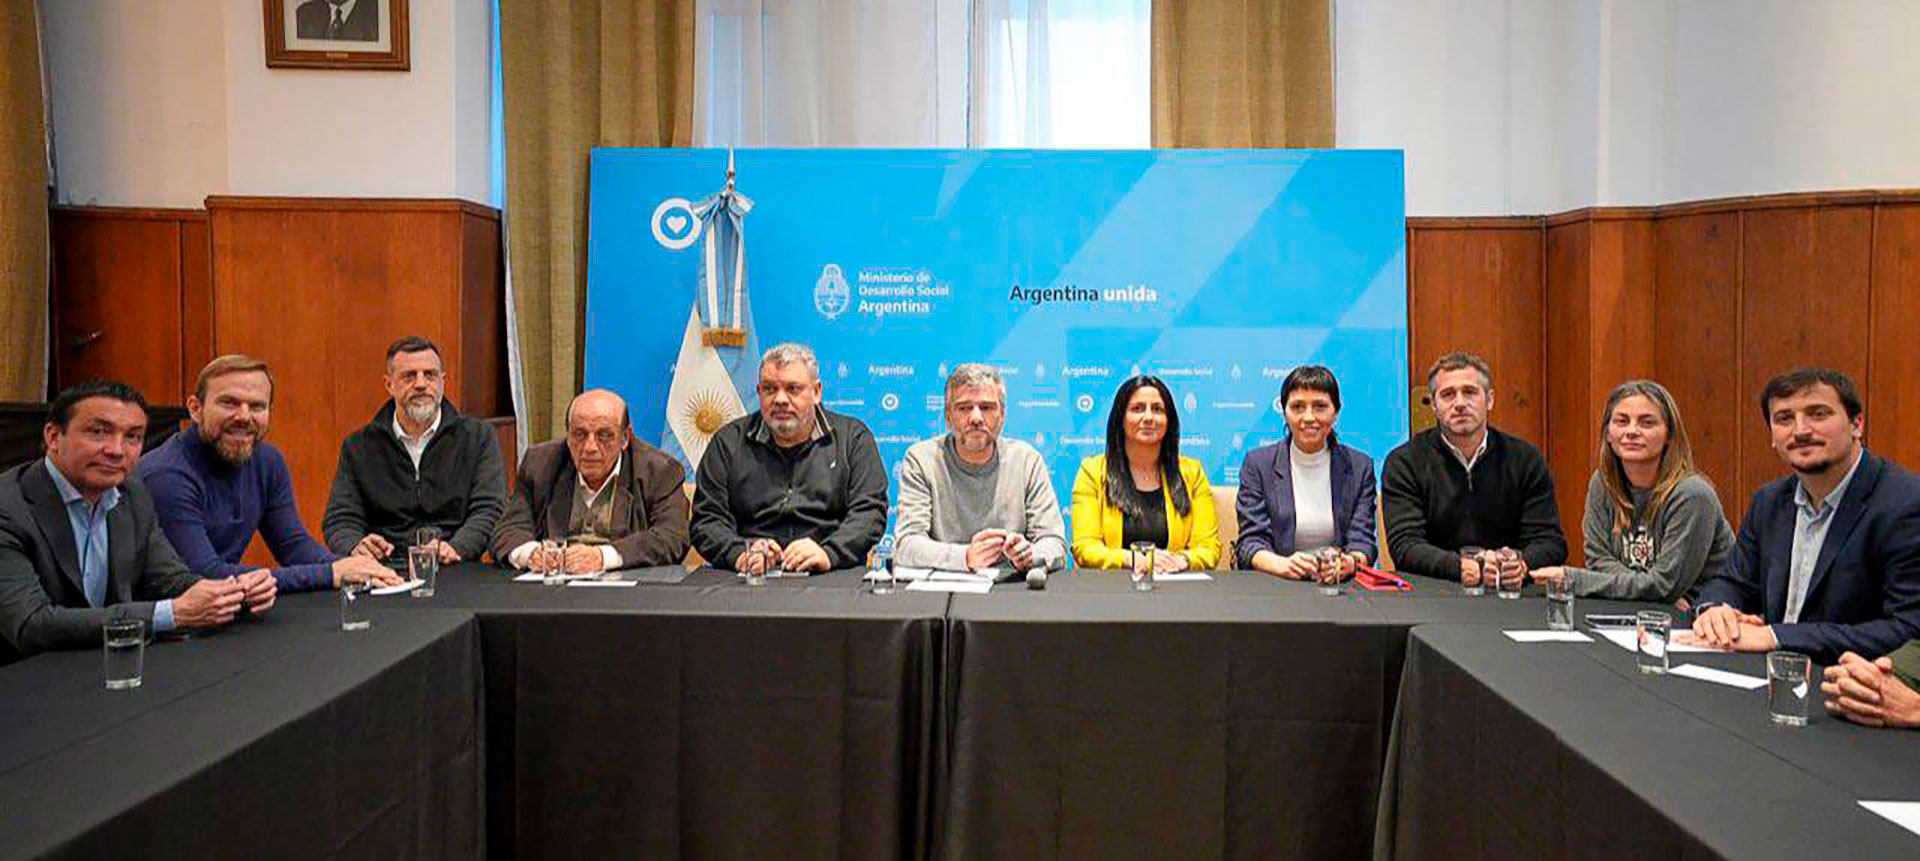 Intendentes del conurbano se reunieron con Juan Zabaleta para apoyar la auditoría al Potenciar Trabajo (Twitter: @MayraSMendoza )